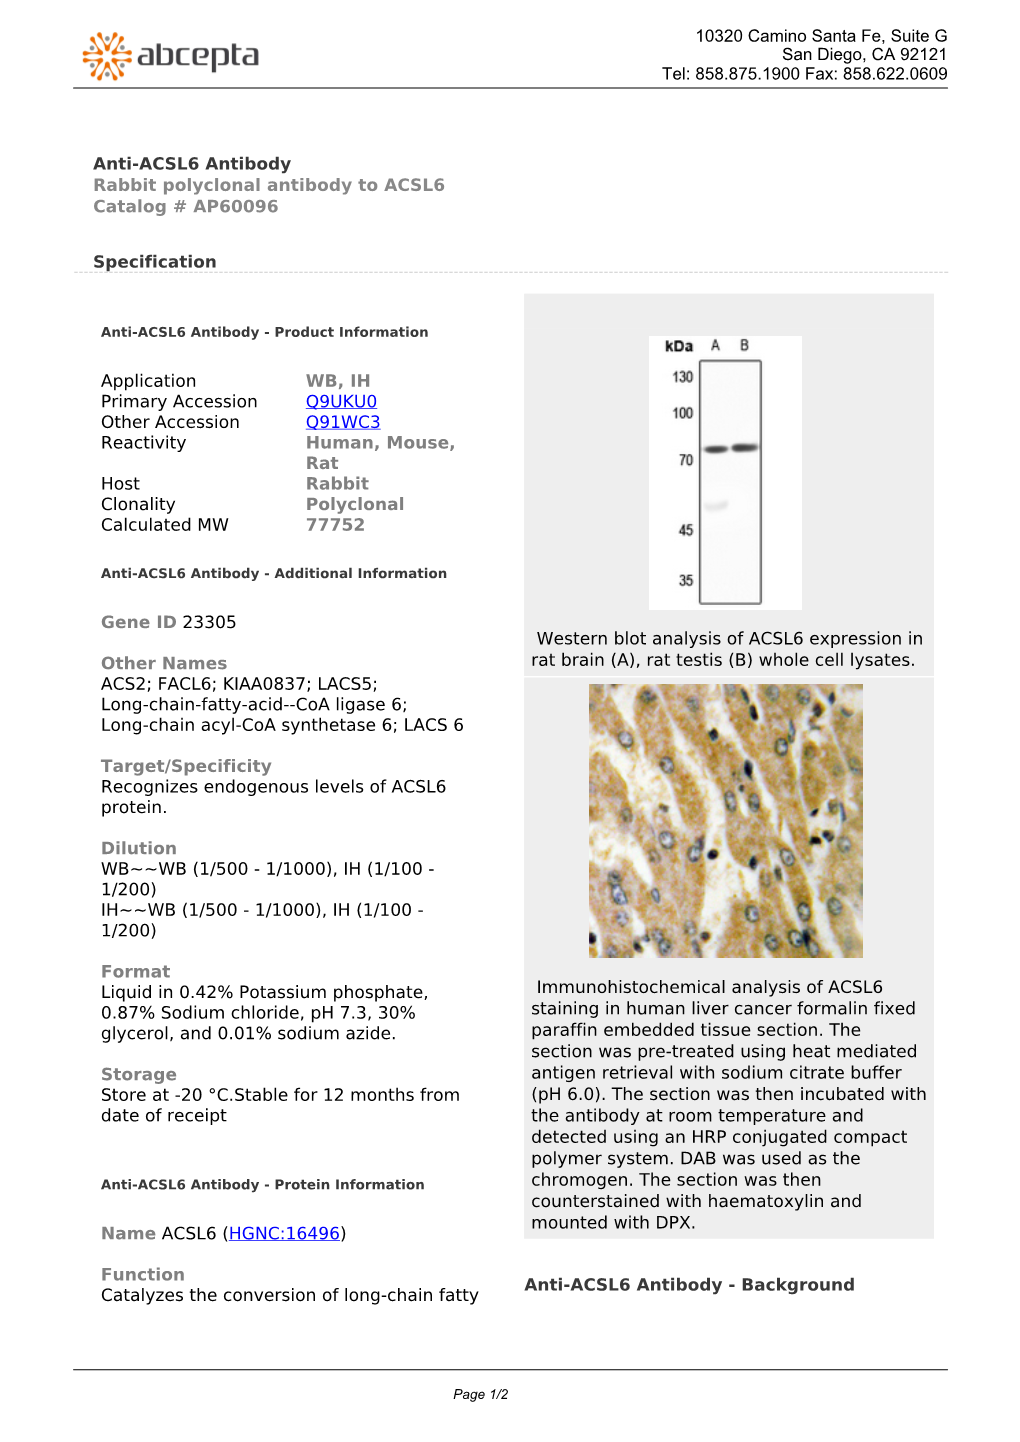 Anti-ACSL6 Antibody Rabbit Polyclonal Antibody to ACSL6 Catalog # AP60096